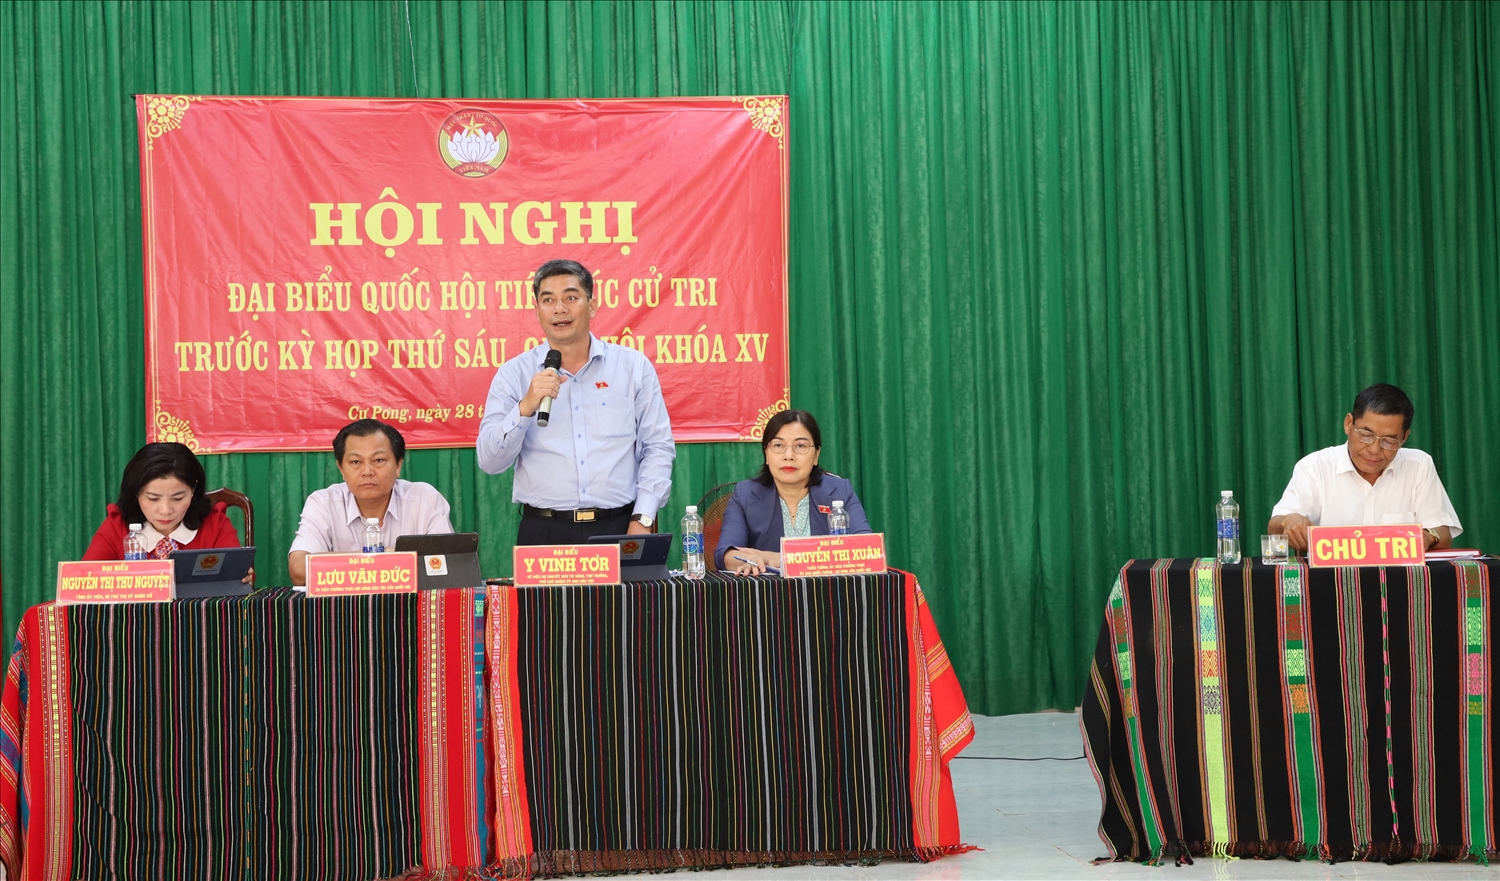 Thứ trưởng, Phó chủ nhiệm Ủy ban Dân tộc Y Vinh Tơr trả lời một nối kiến nghị của cử tri huyện Krông Búk